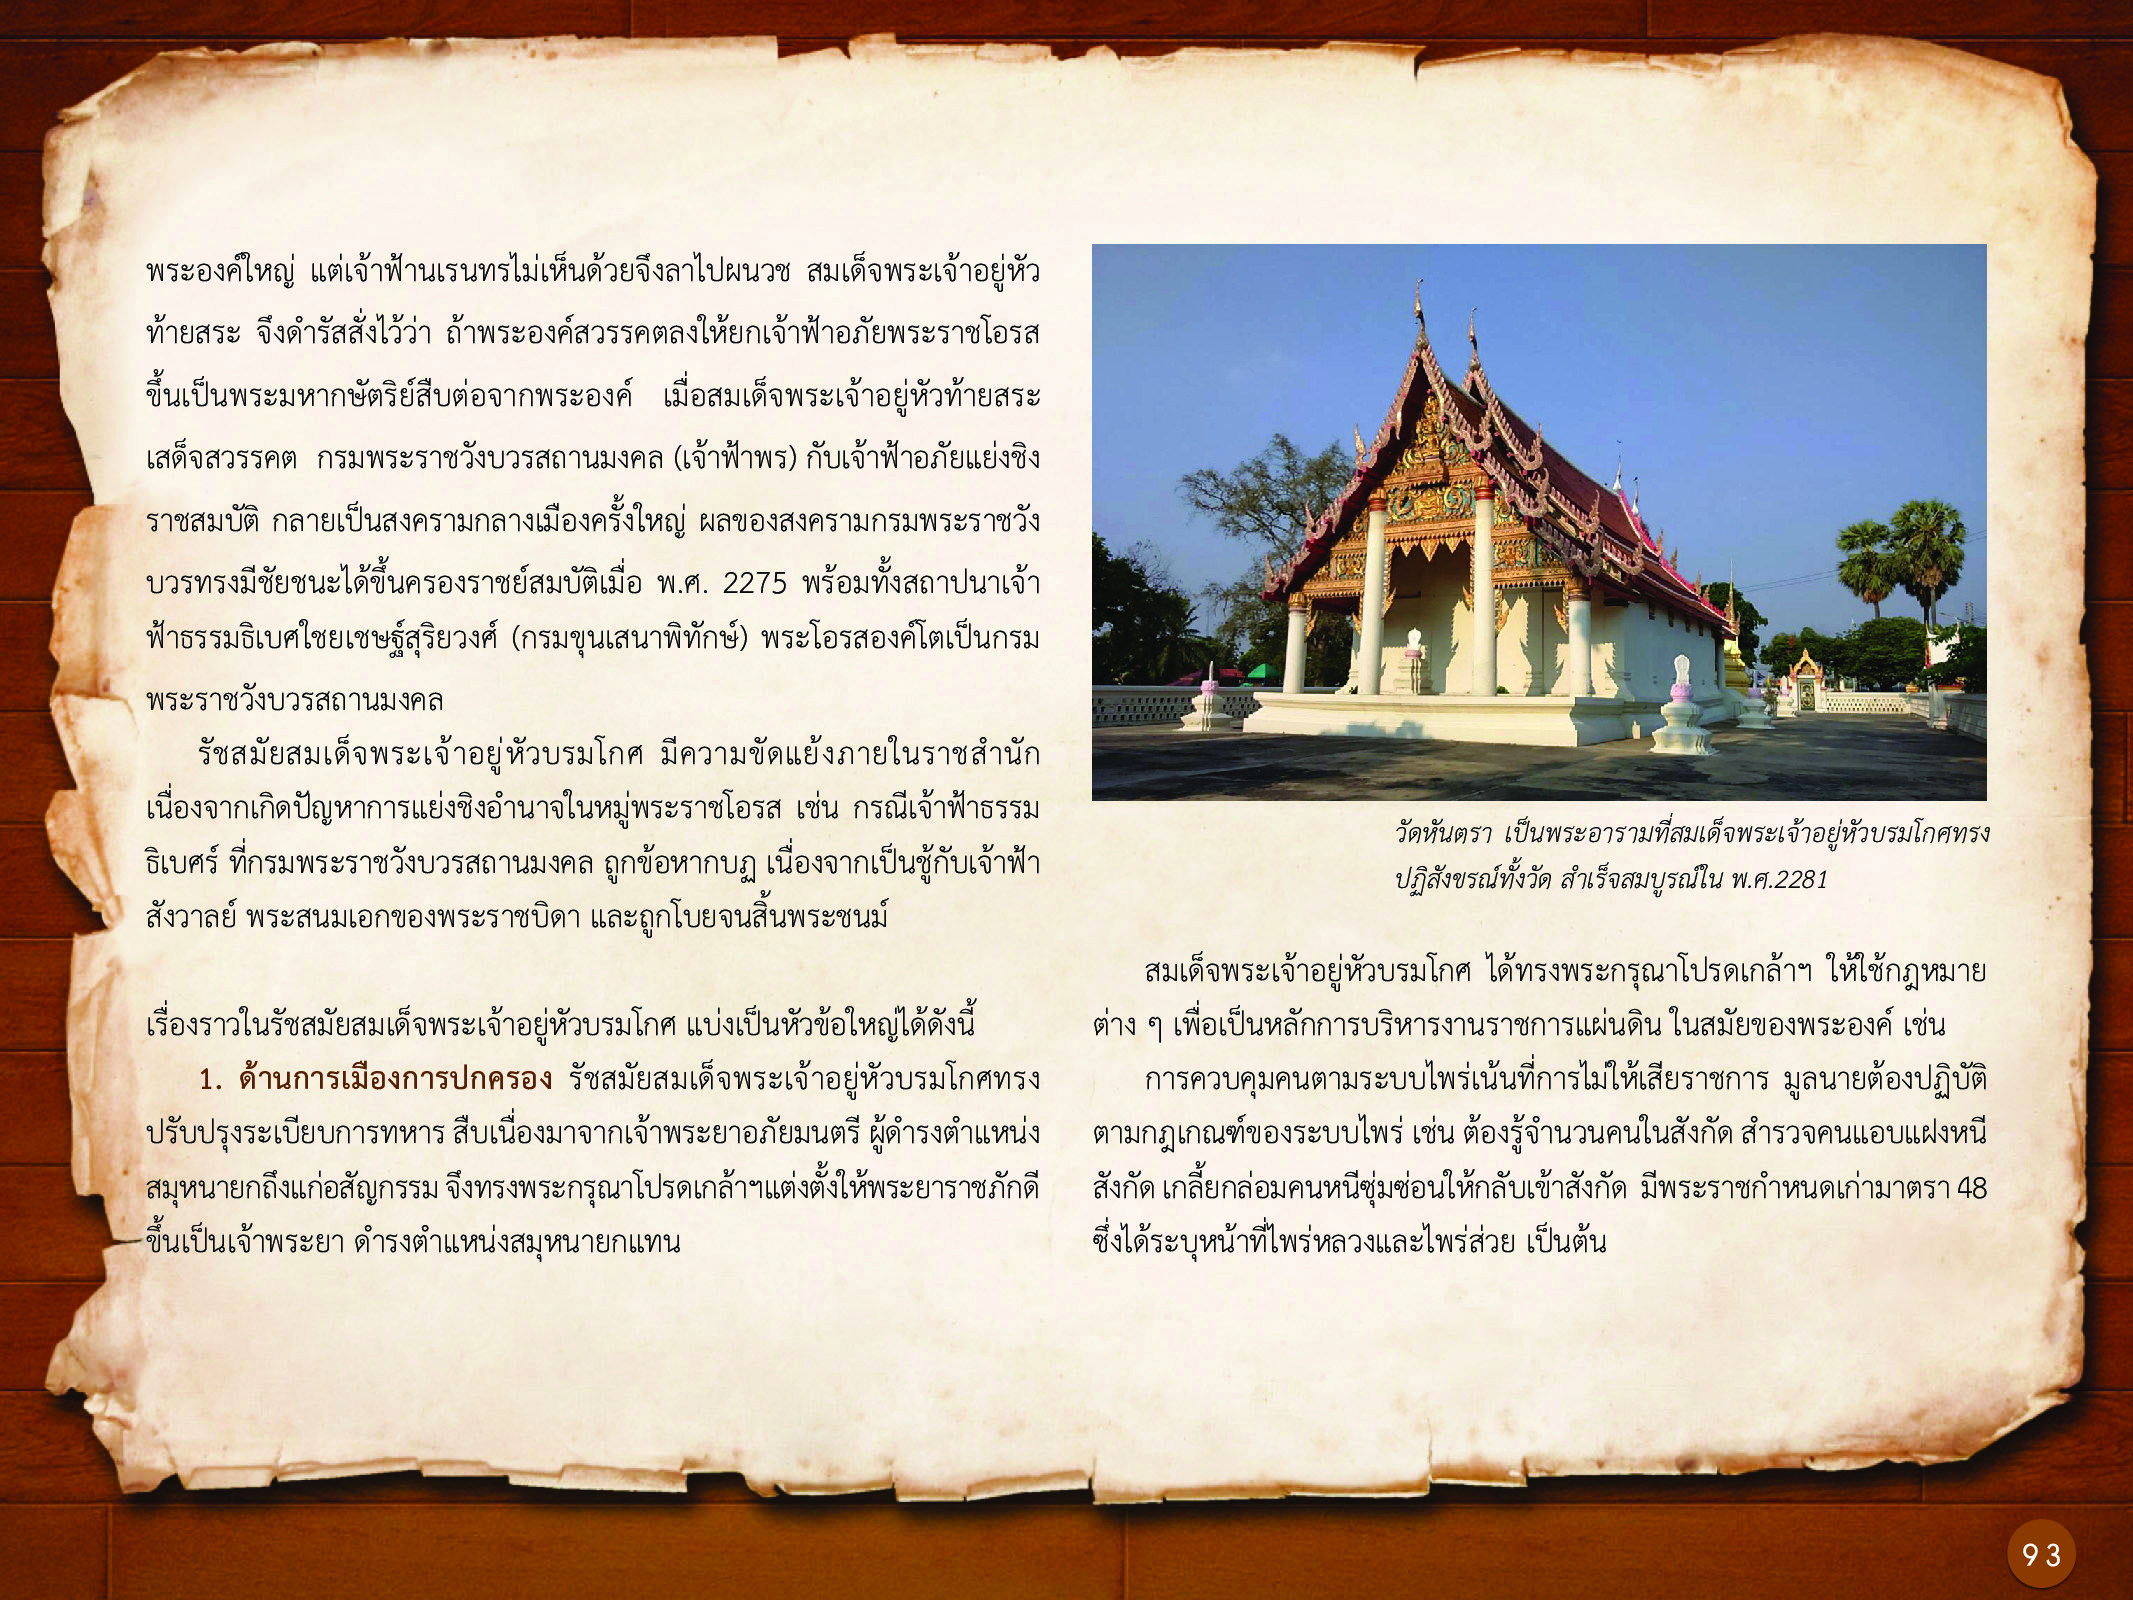 ประวัติศาสตร์กรุงธนบุรี ./images/history_dhonburi/93.jpg